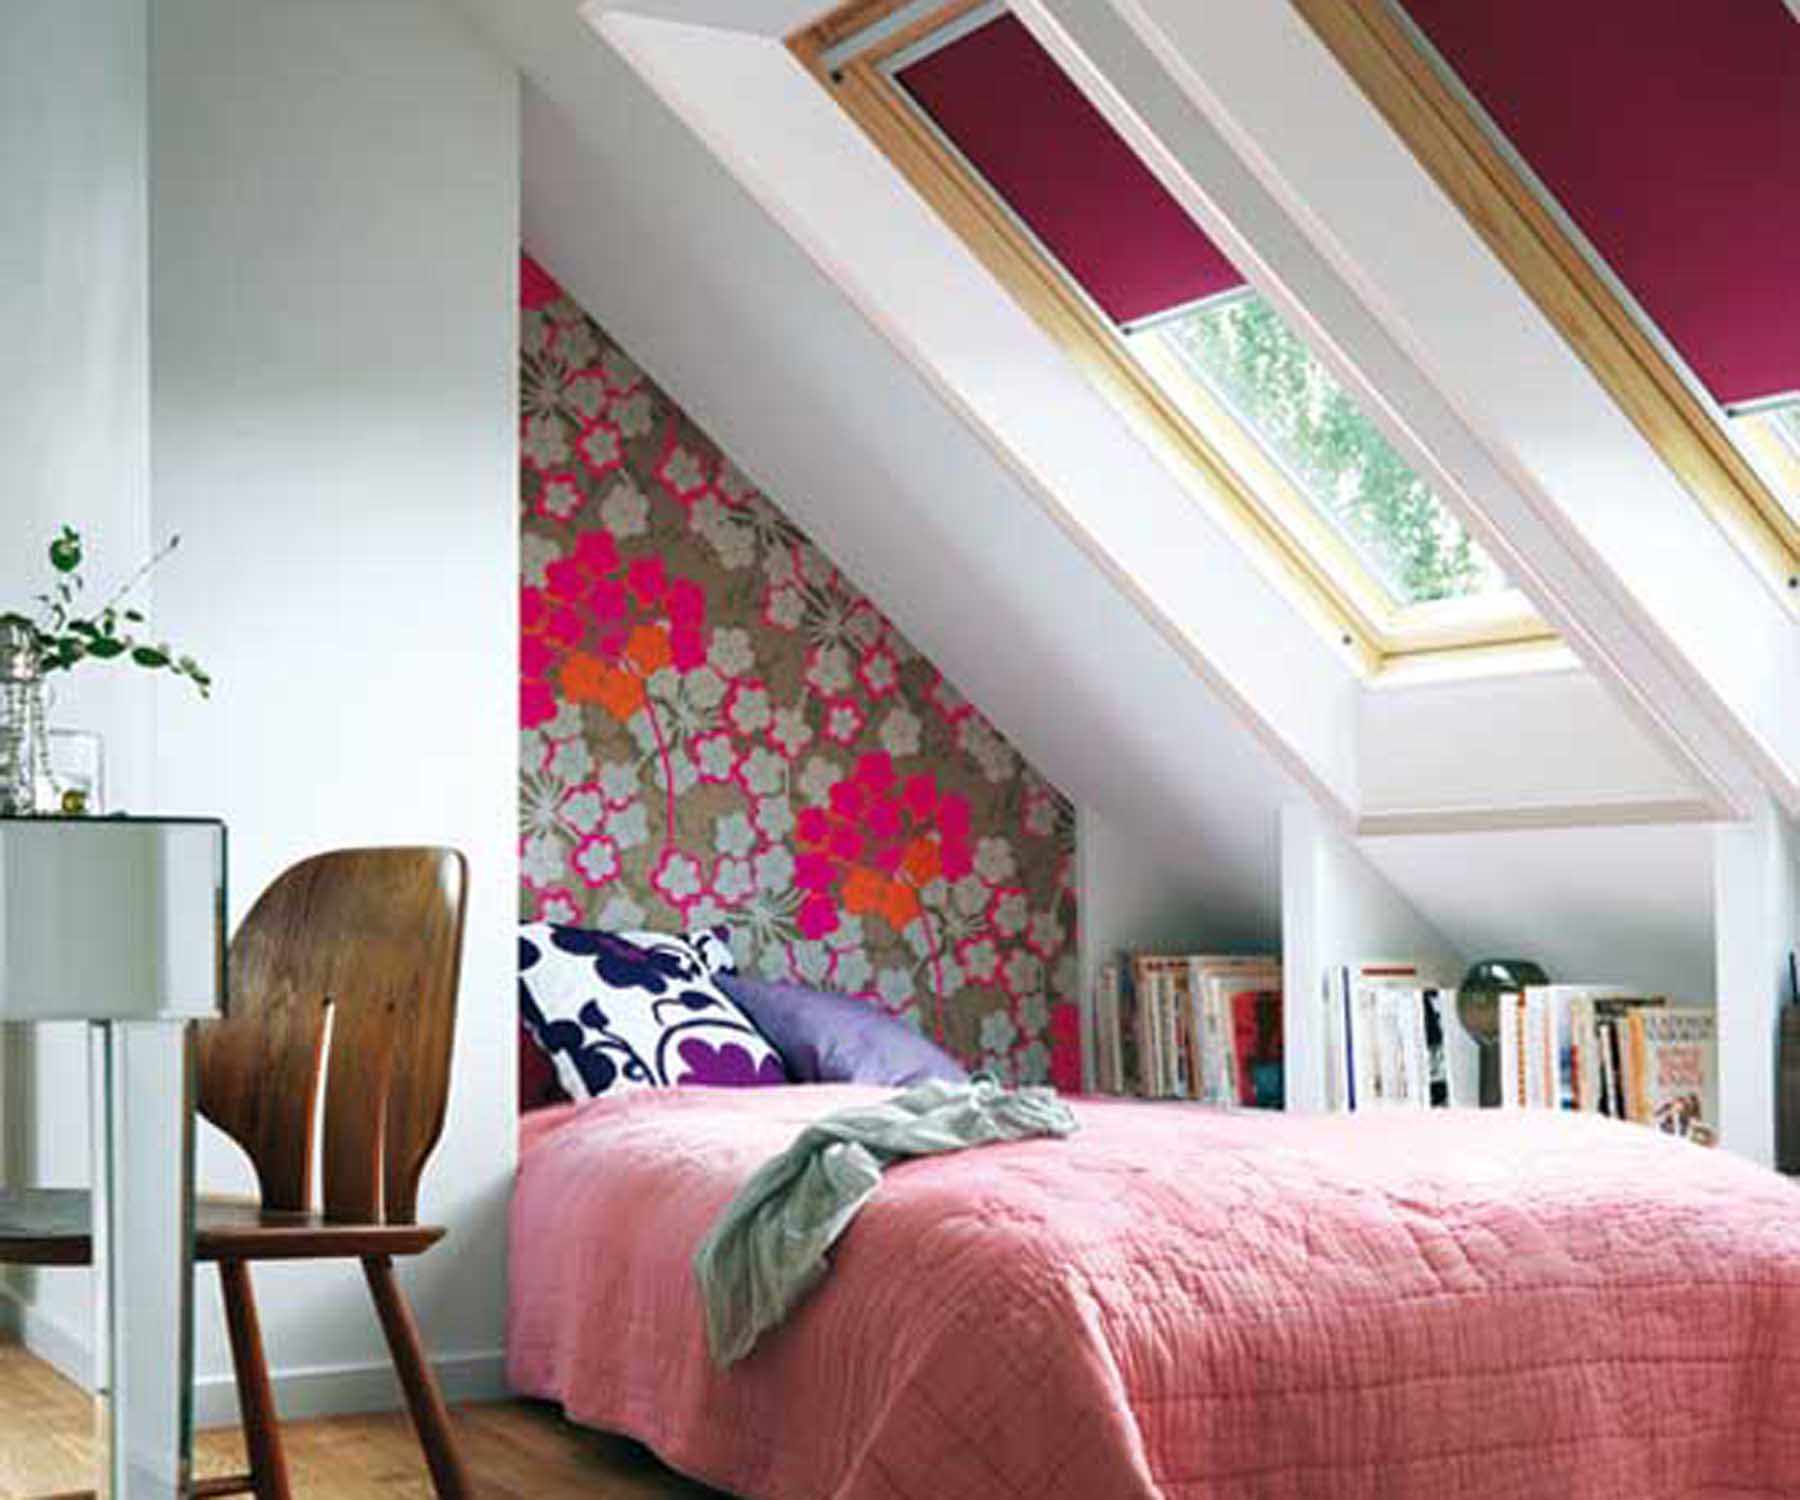 l'idea di una bellissima camera da letto interna in soffitta